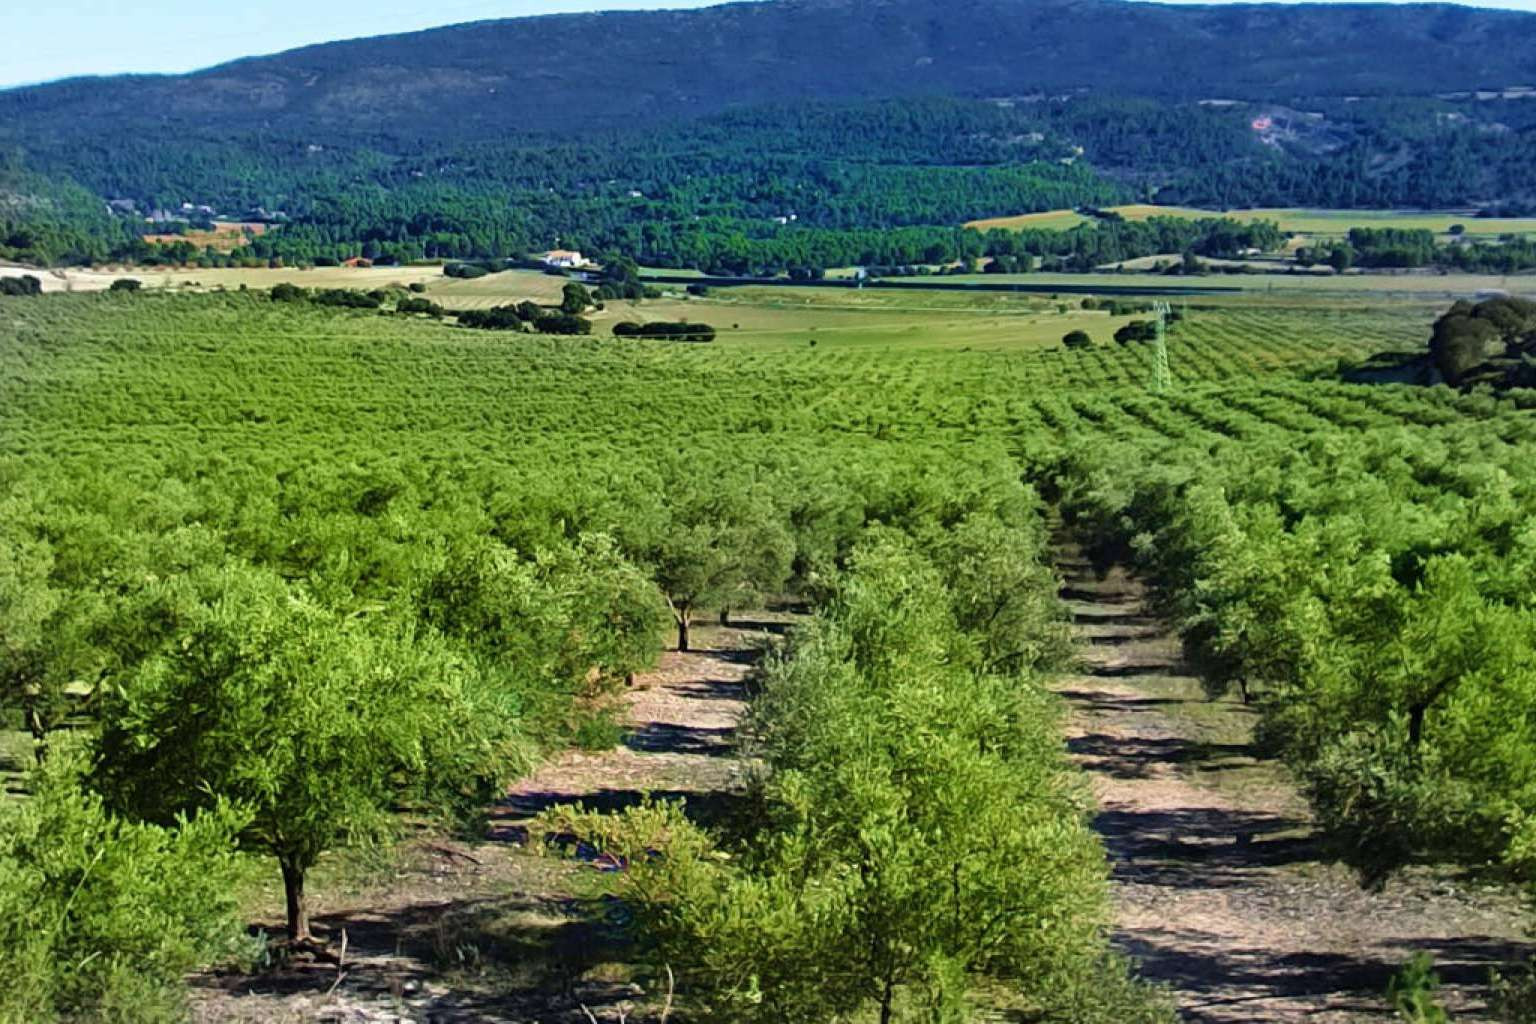  La finca Masía Vilaplana produce aceite de oliva virgen extra 